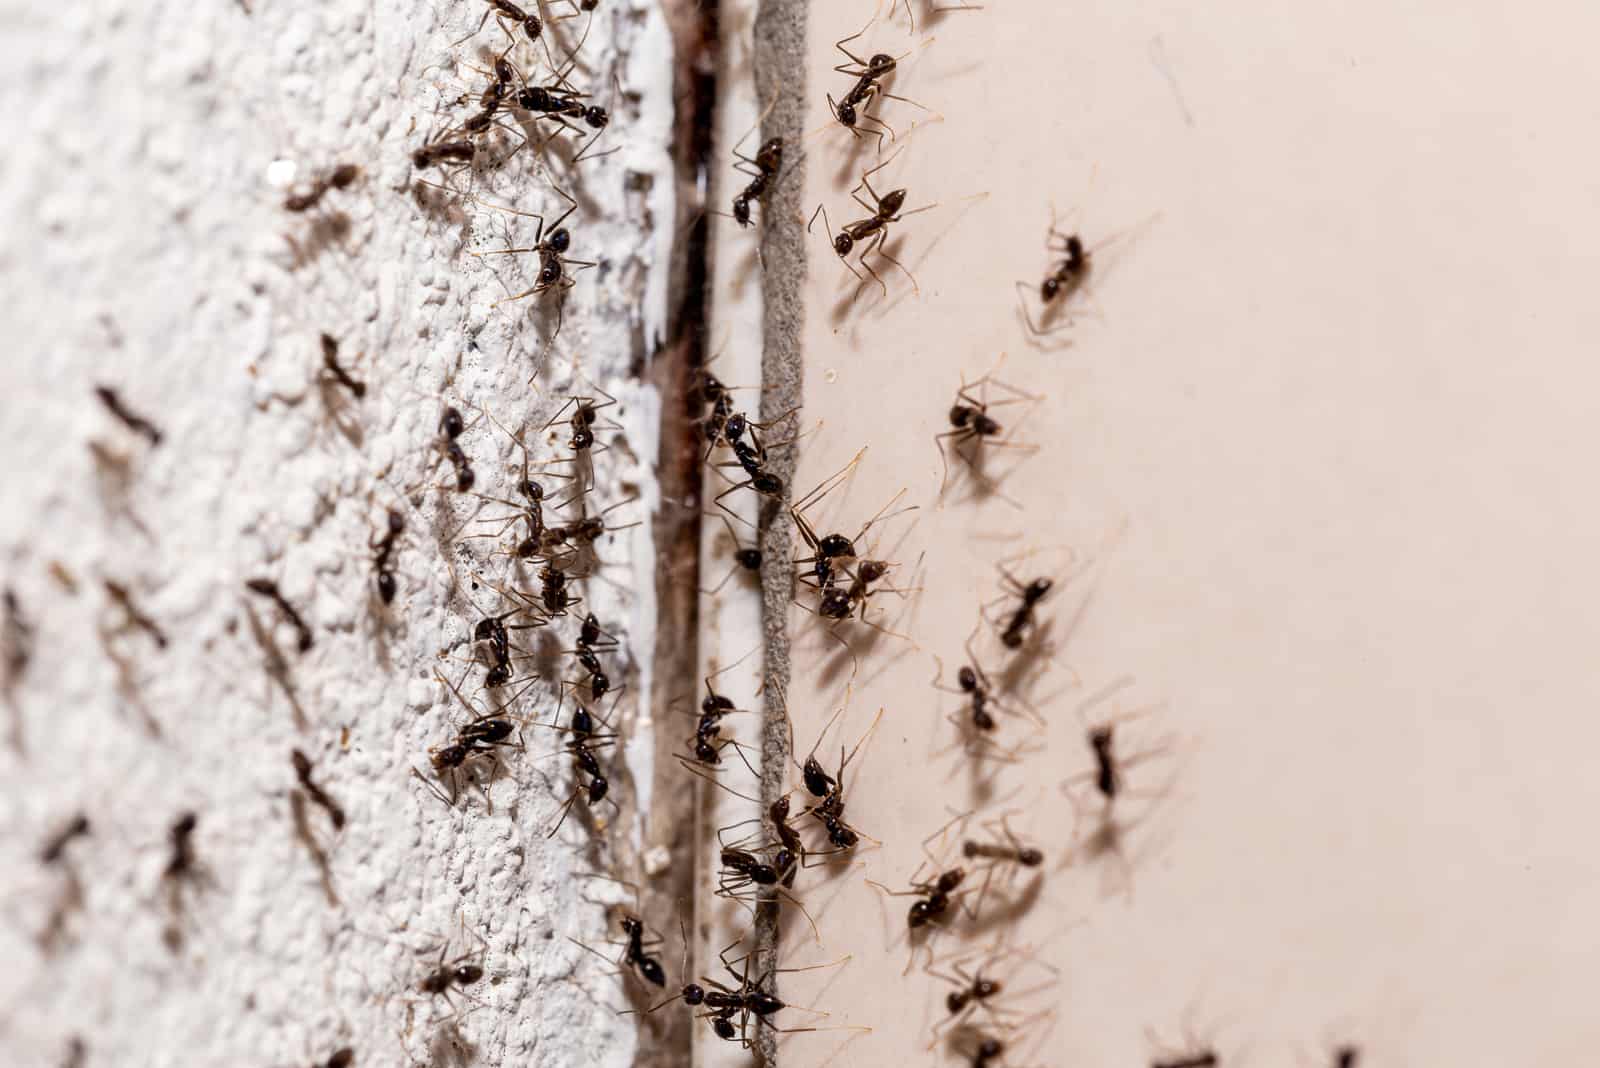 un groupe de fourmis sur le mur